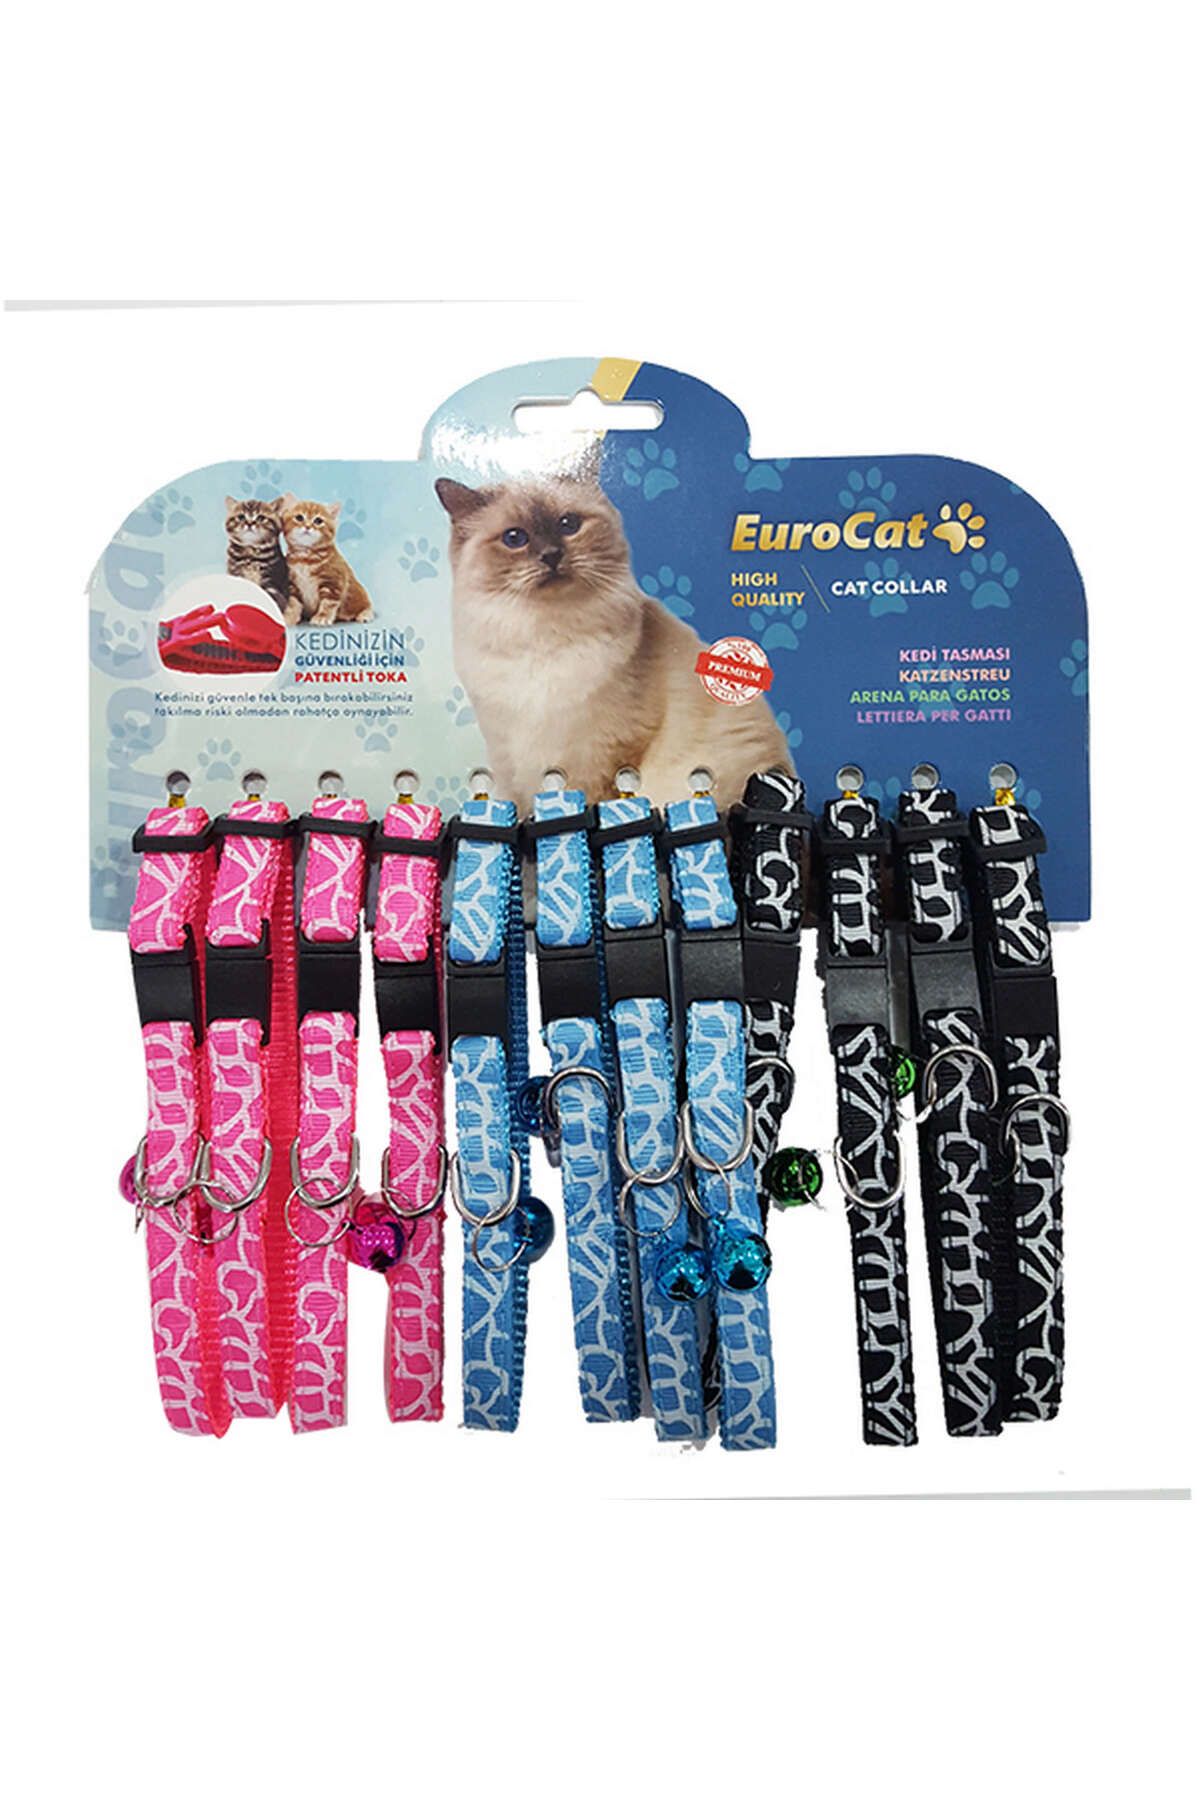 Eurocat Çizgi Desenli Çıngıraklı Kedi Boyun Tasması 12'li 316105